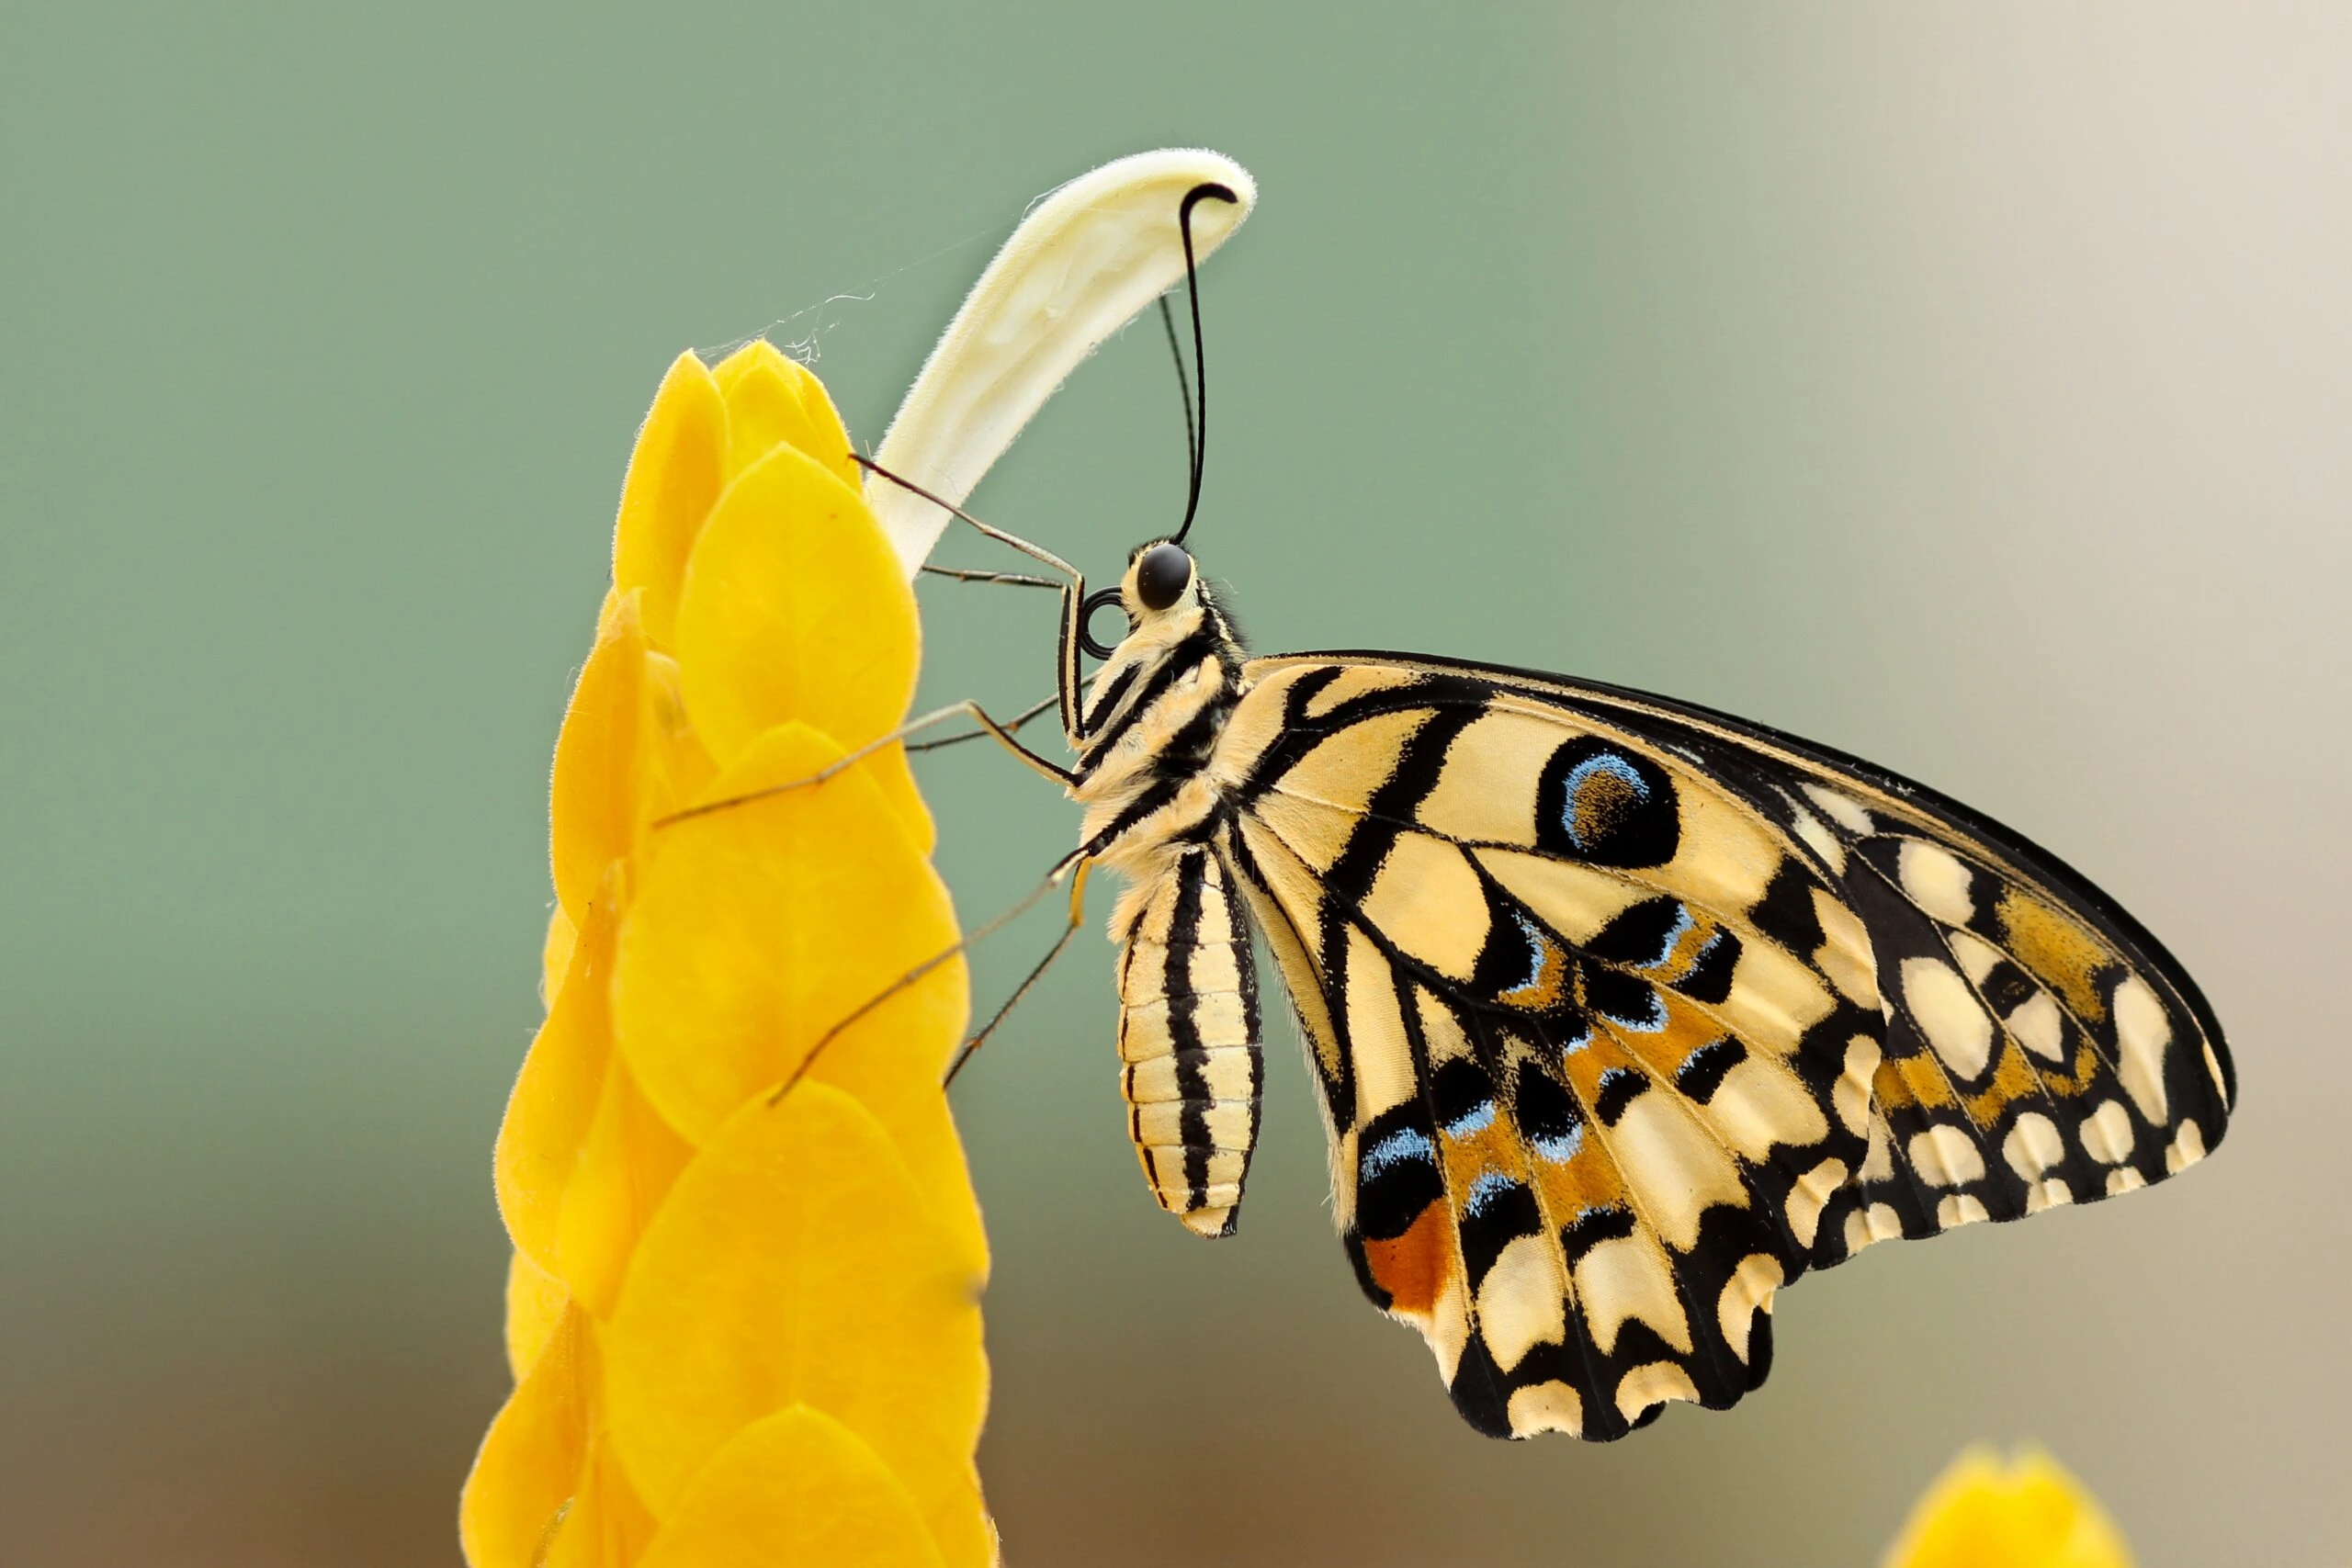 Monarch on yellow bud flower by boris smokrovic